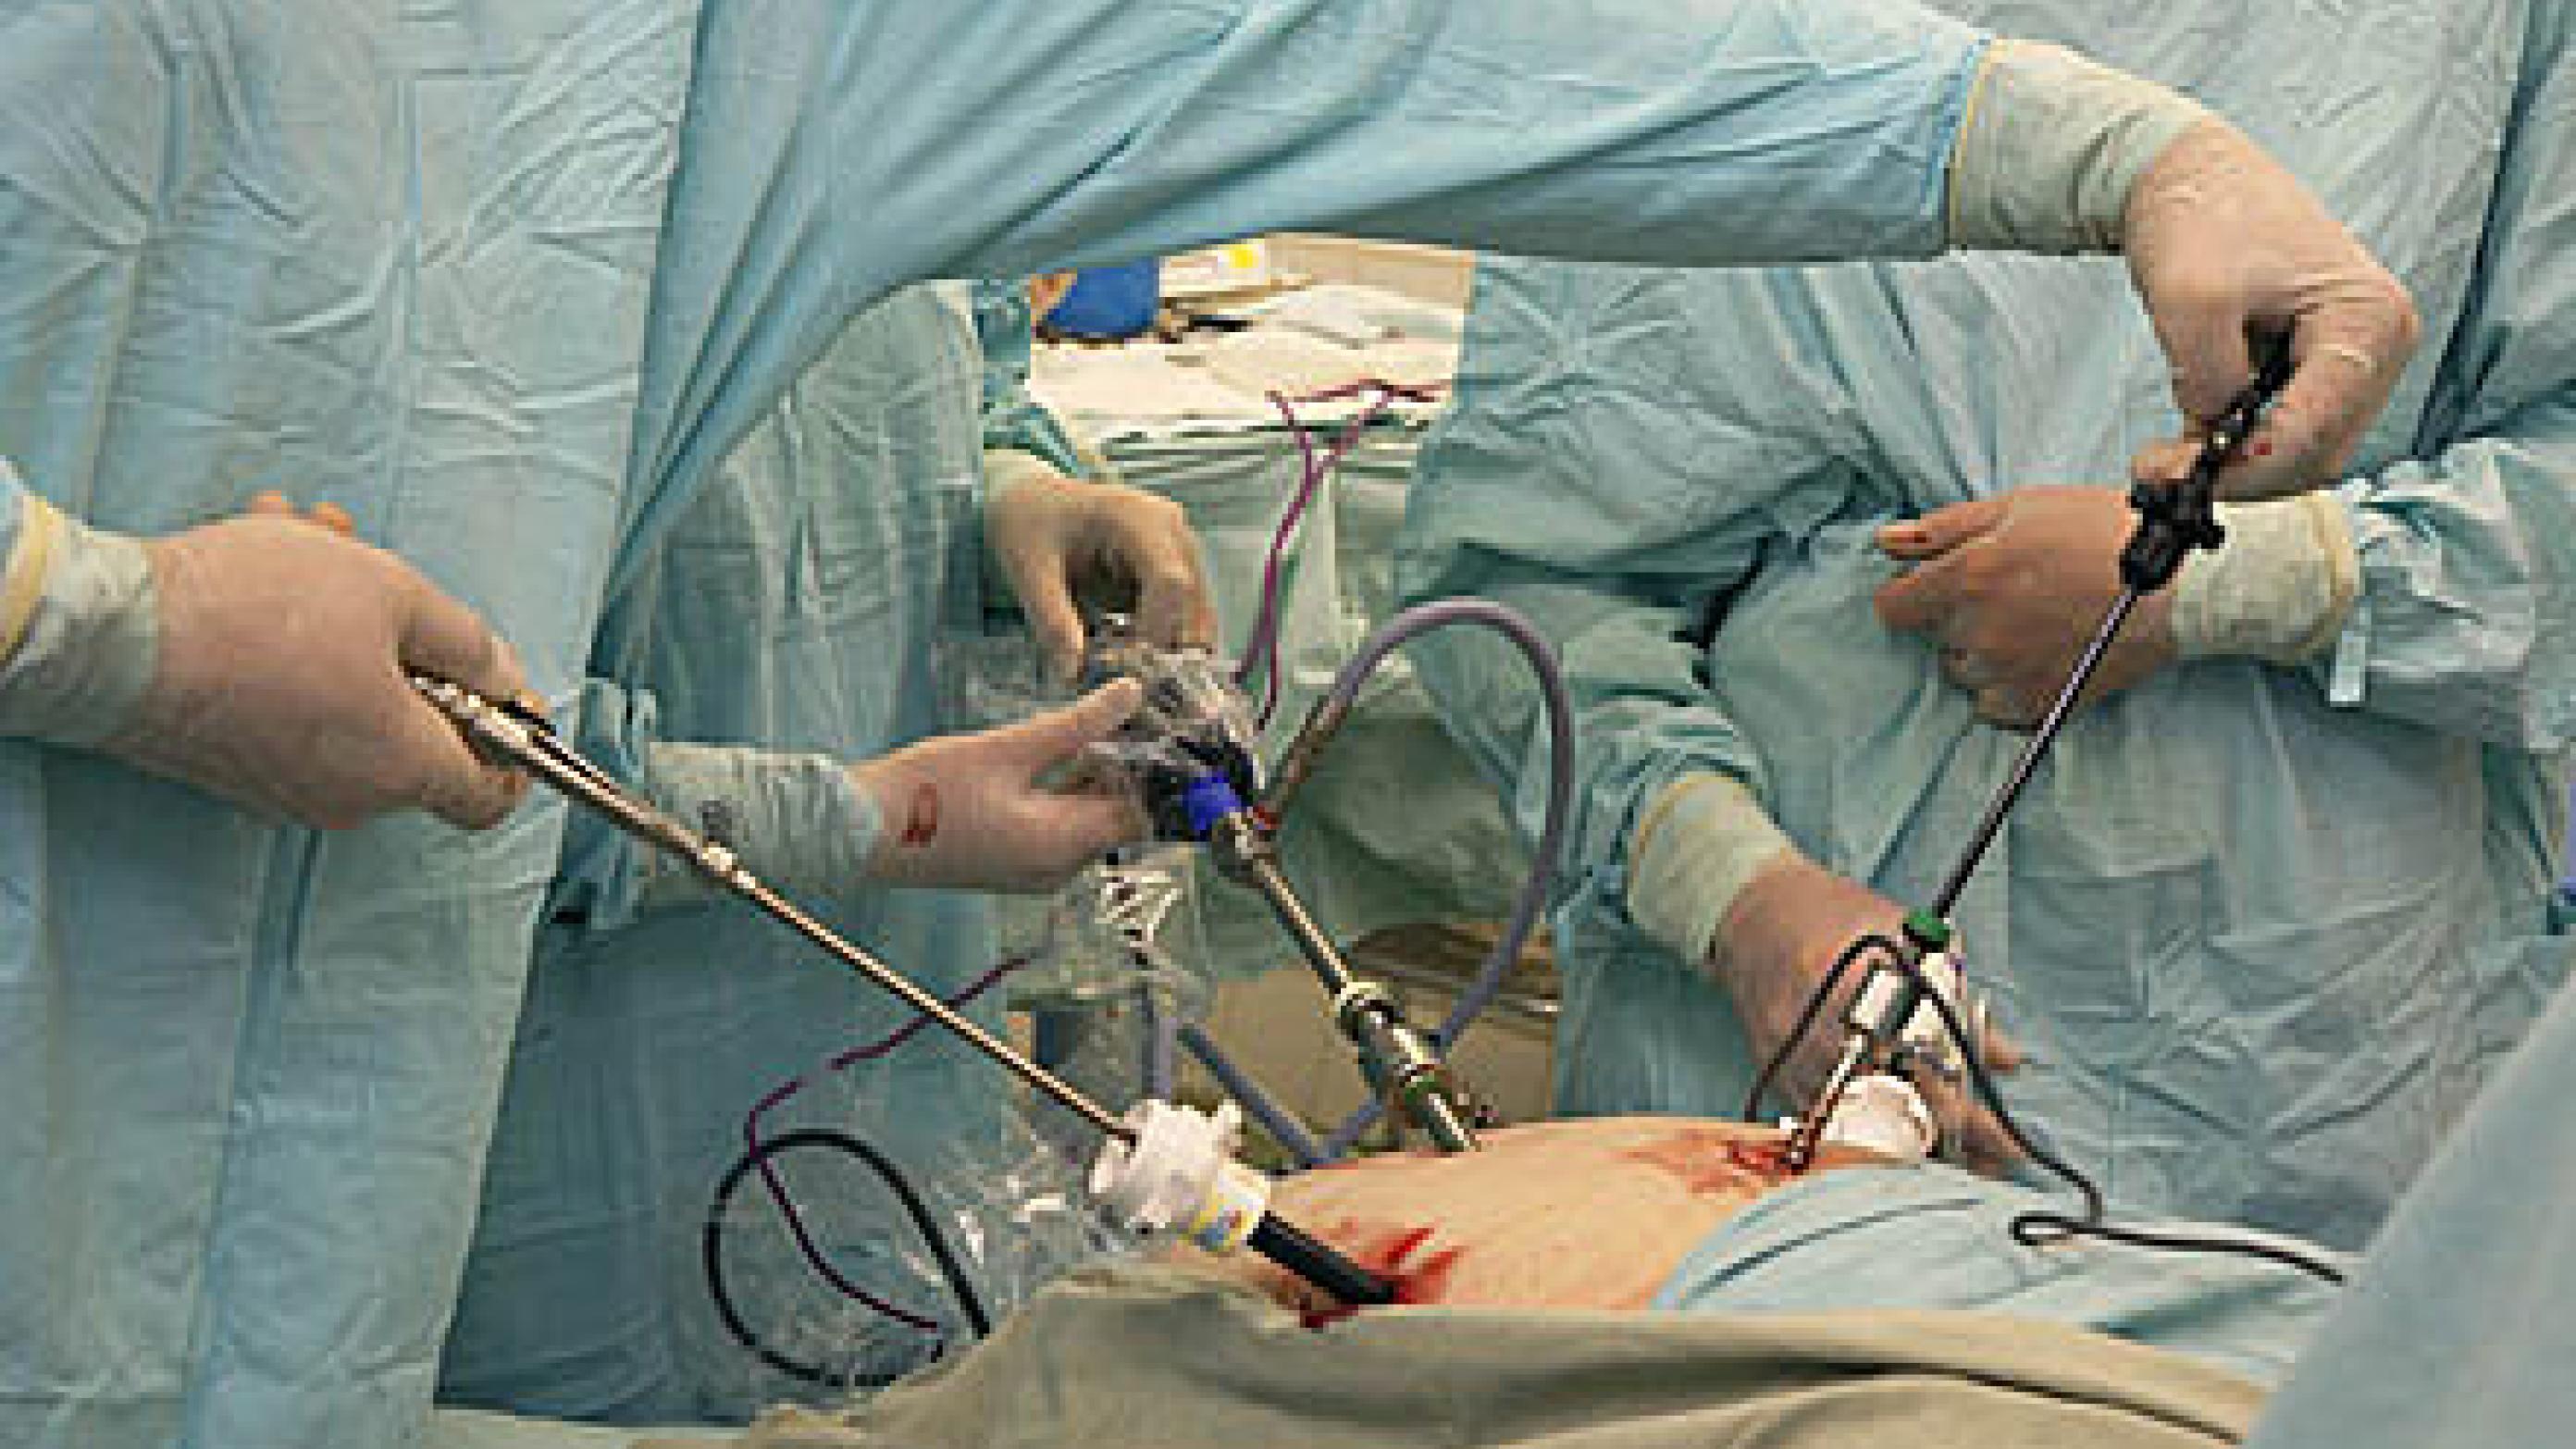 Kirurgisk refertilisation foretages nu ofte laparoskopisk.